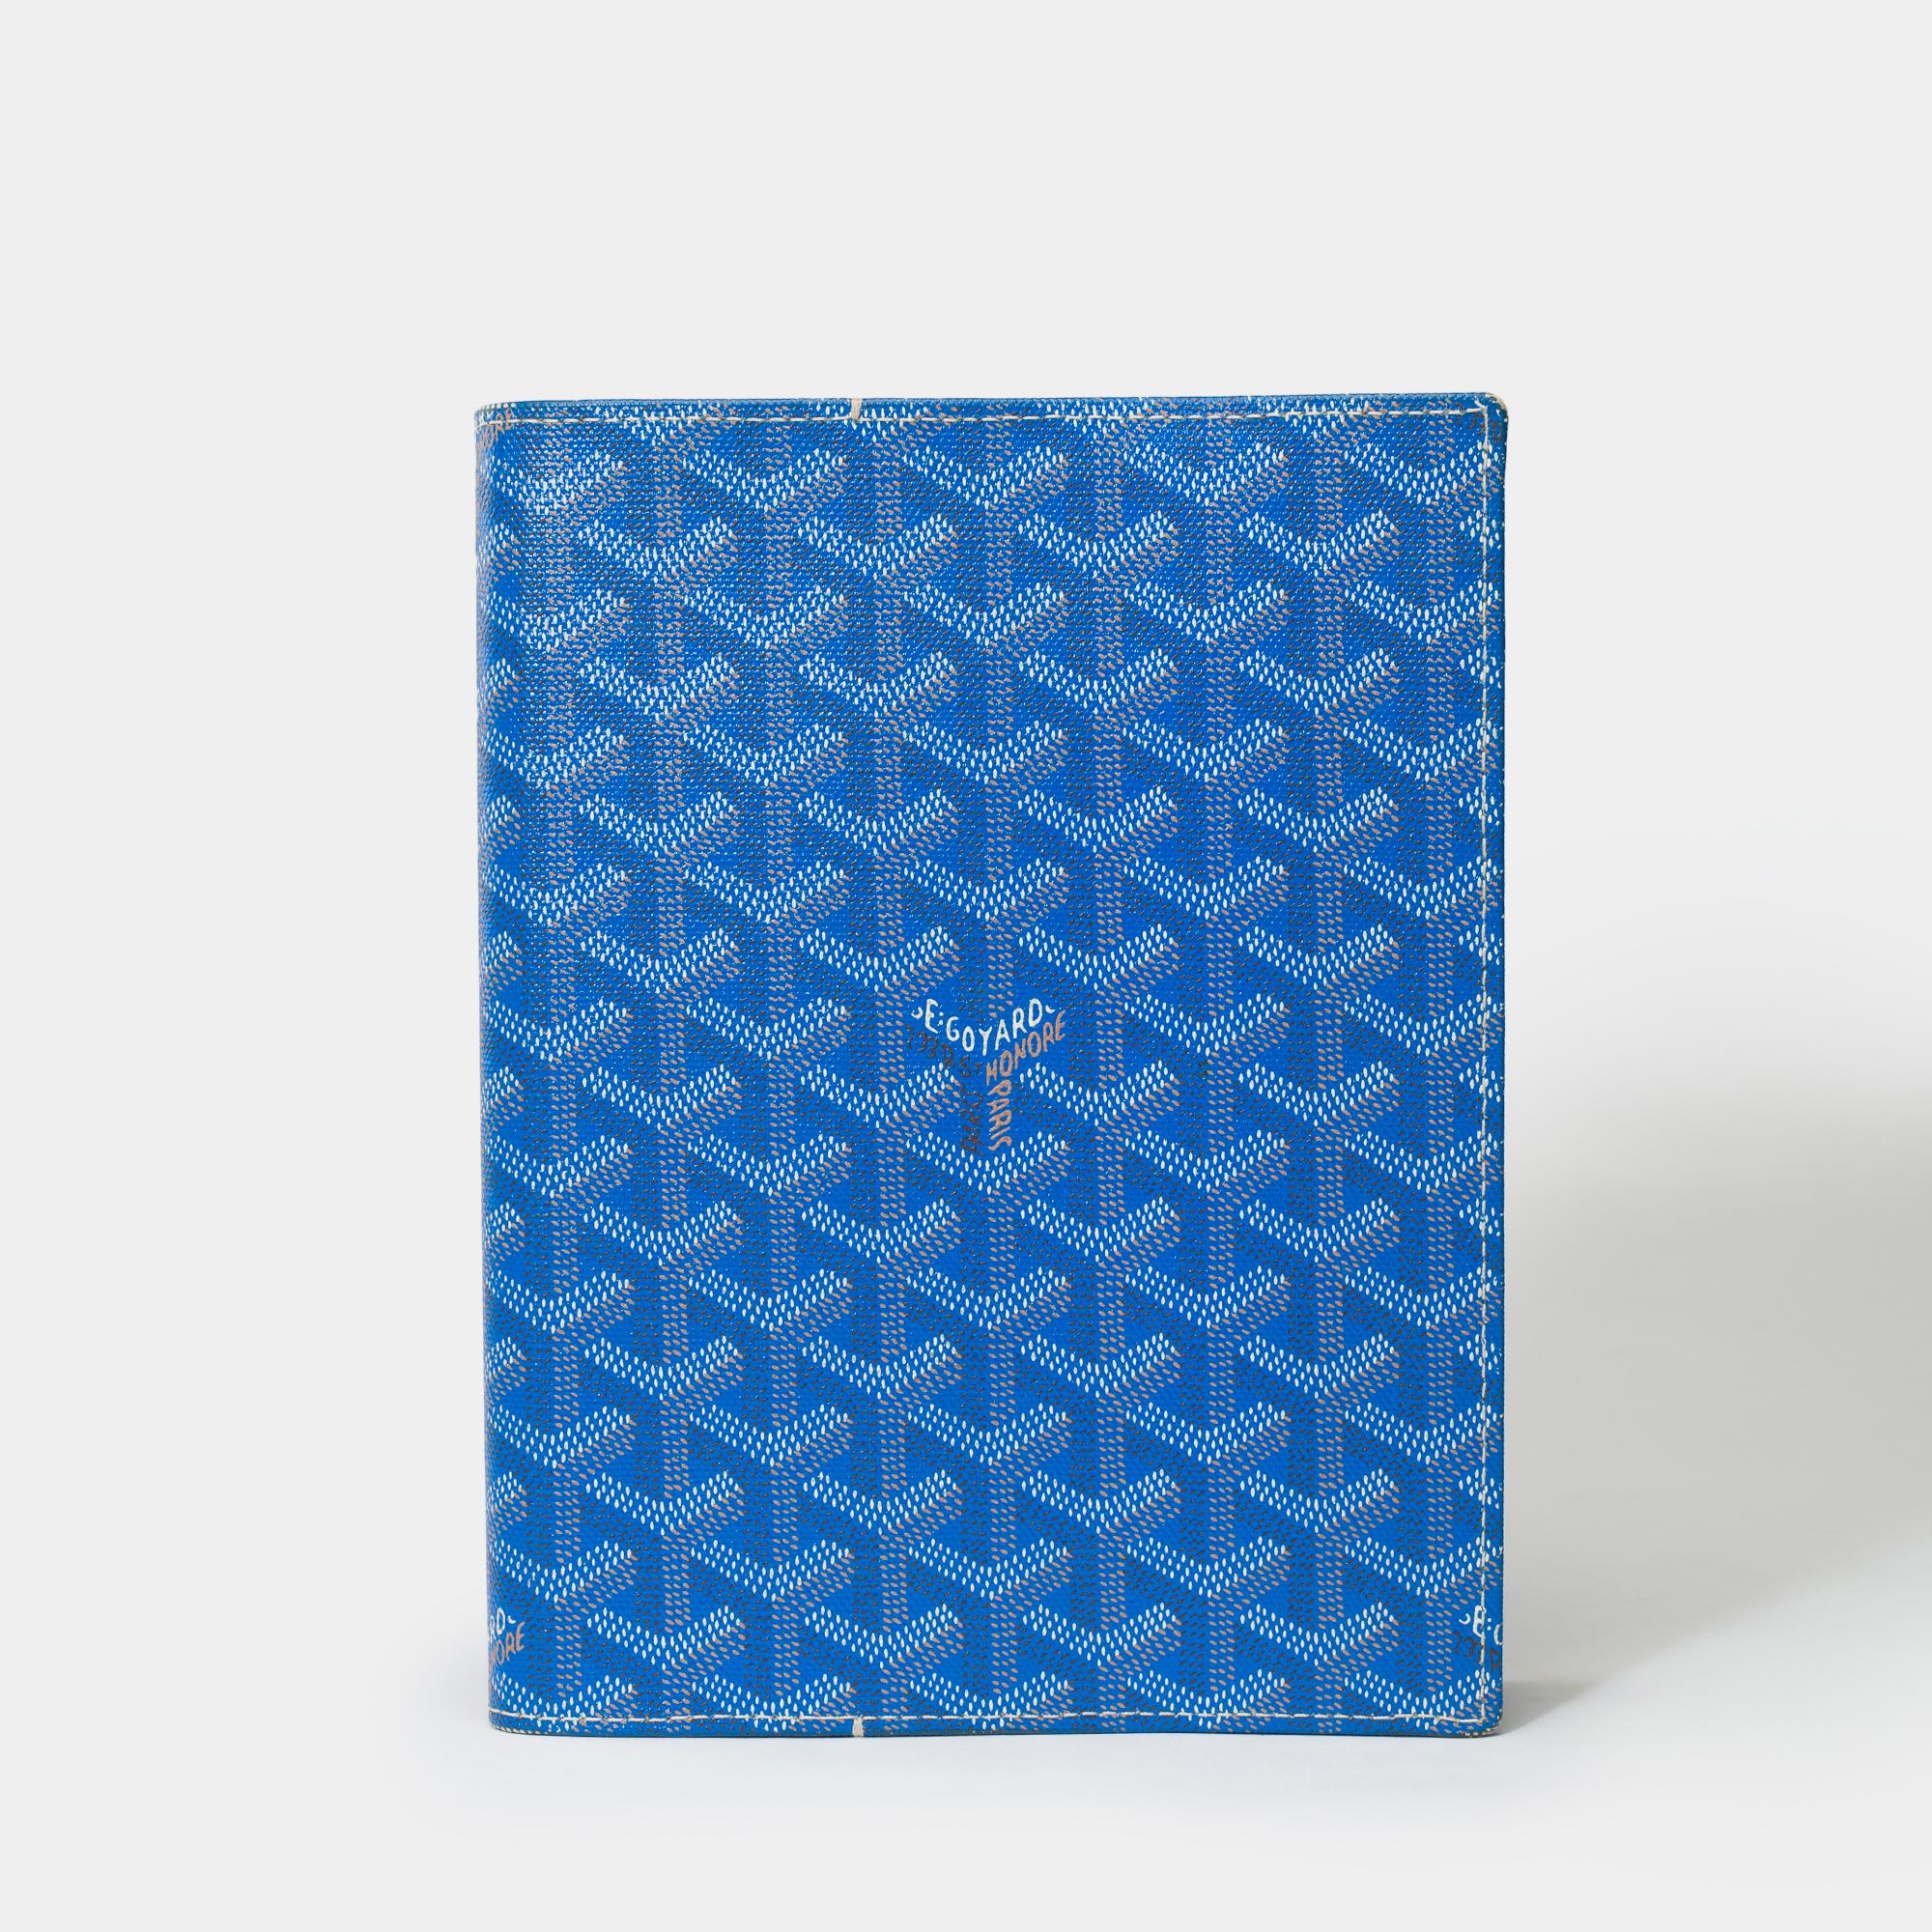 Magnifique couverture d'agenda Goyard Castiglione en toile Goyardine bleue
Il peut être utilisé avec différentes recharges : recharge agenda, rééditée chaque année, pour tenir son planning à jour, ou recharge carnet pour une prise de notes